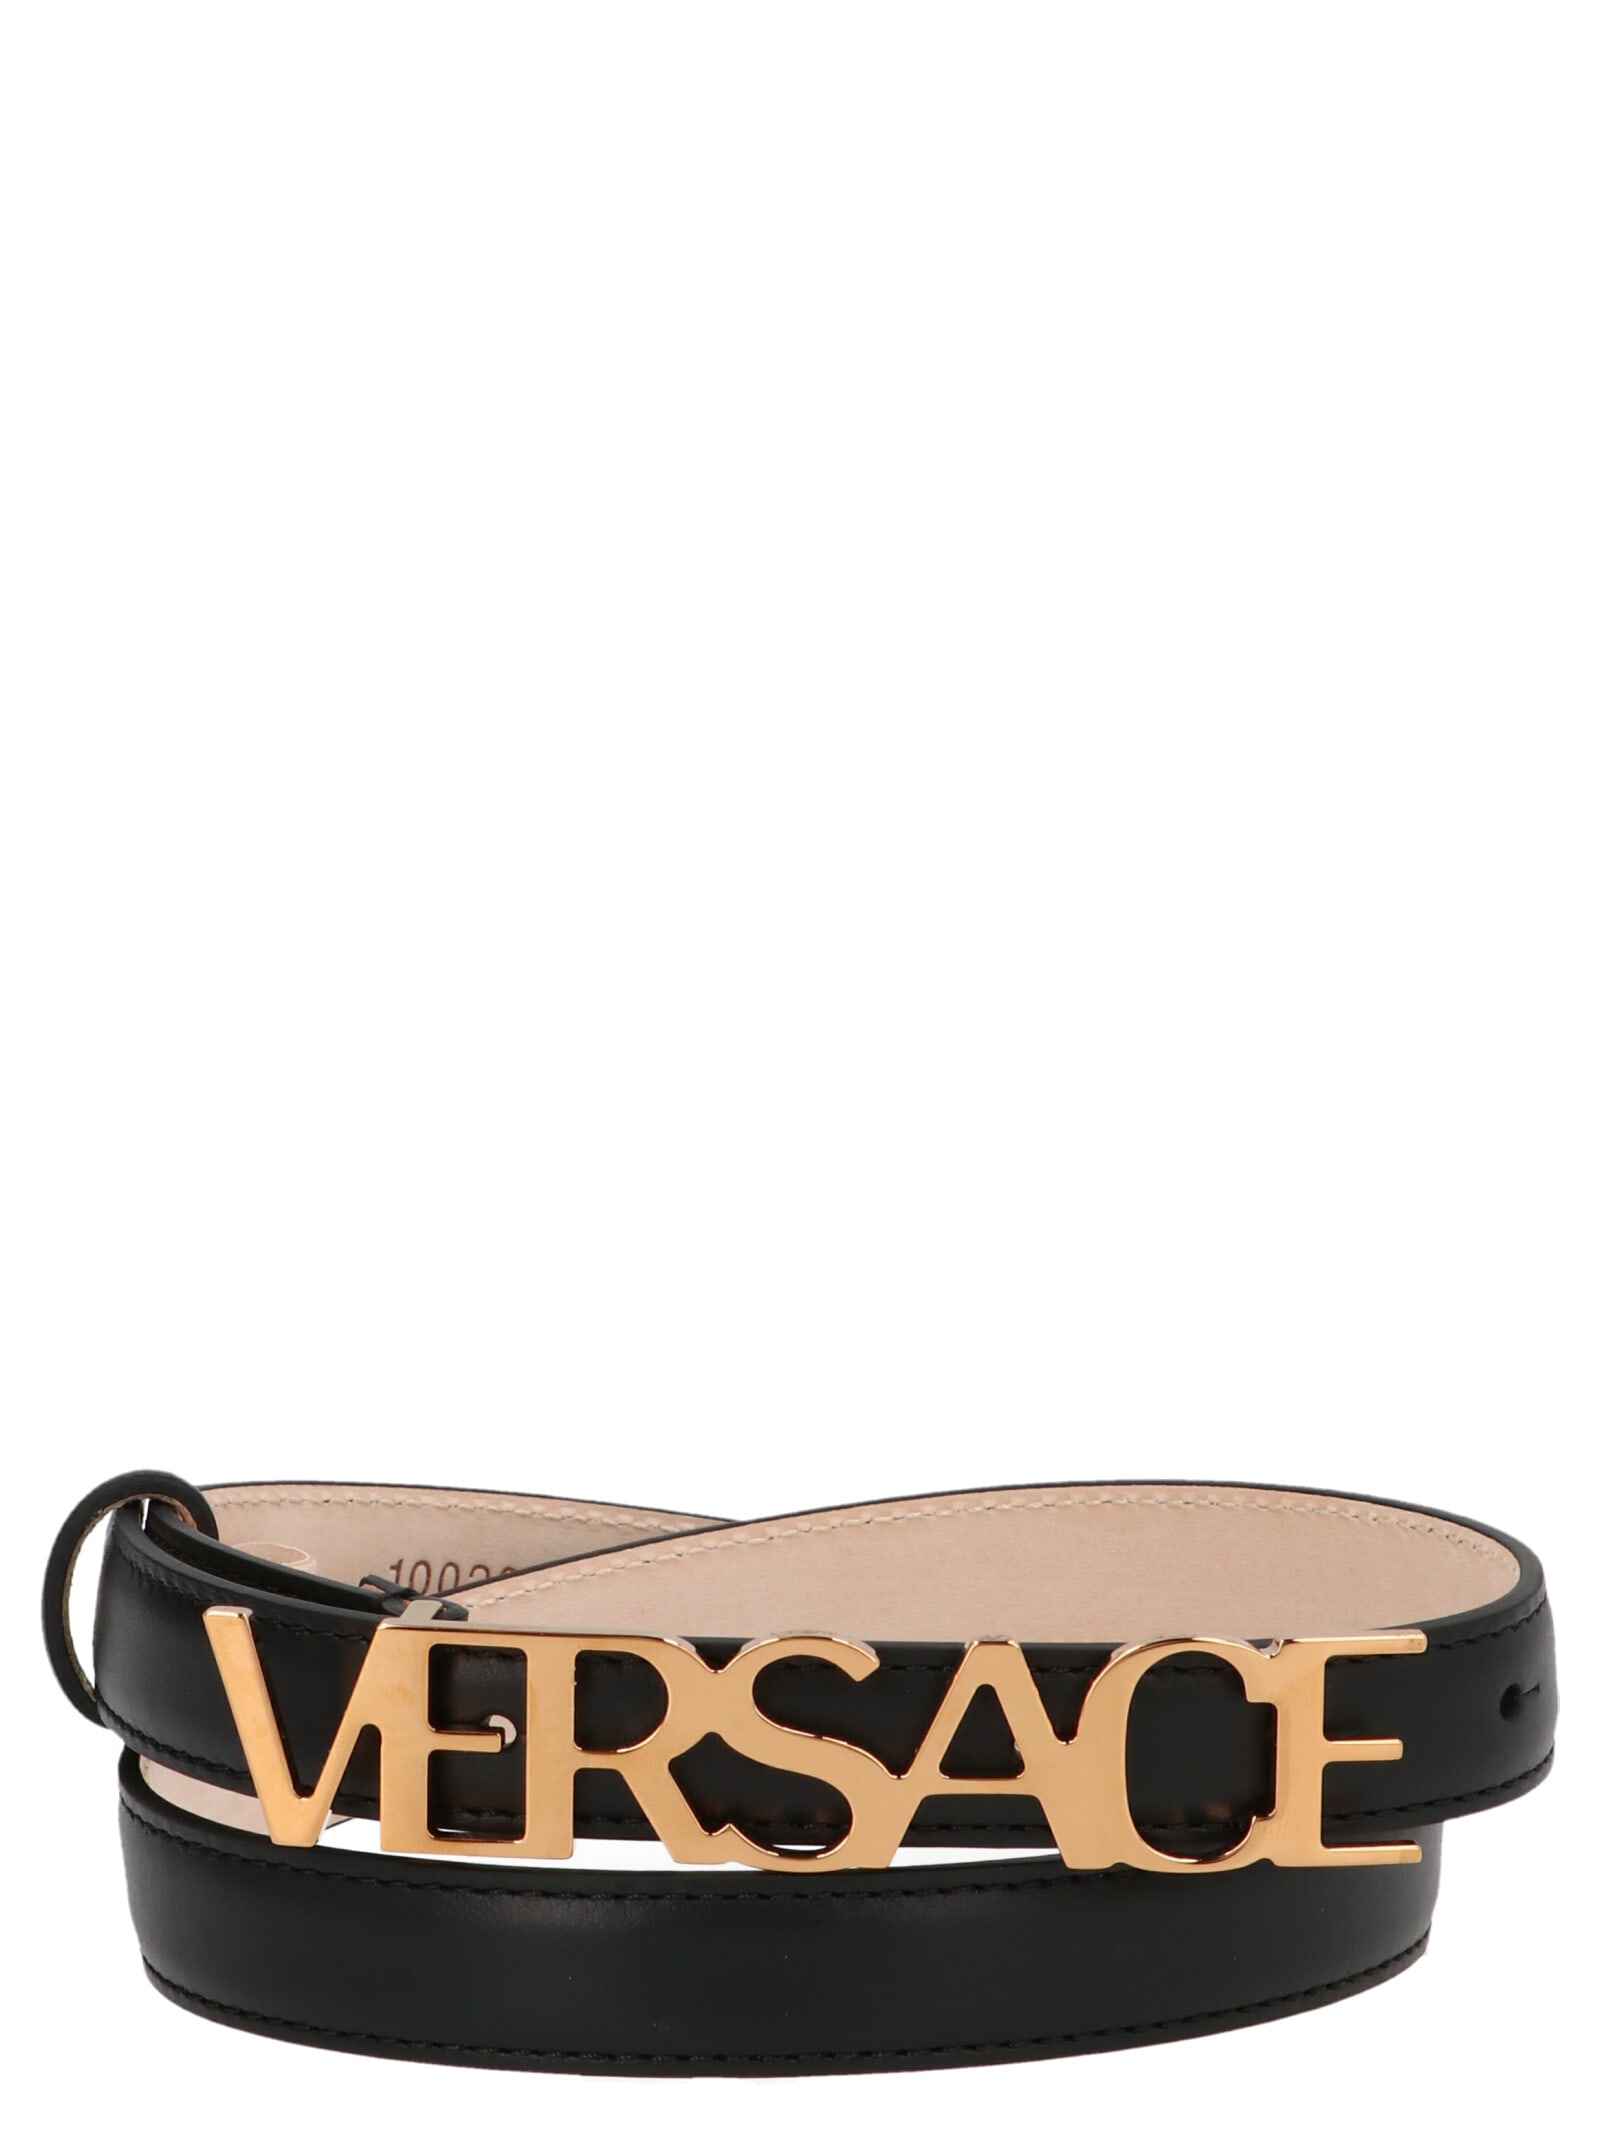 Versace Typography Buckle Belt